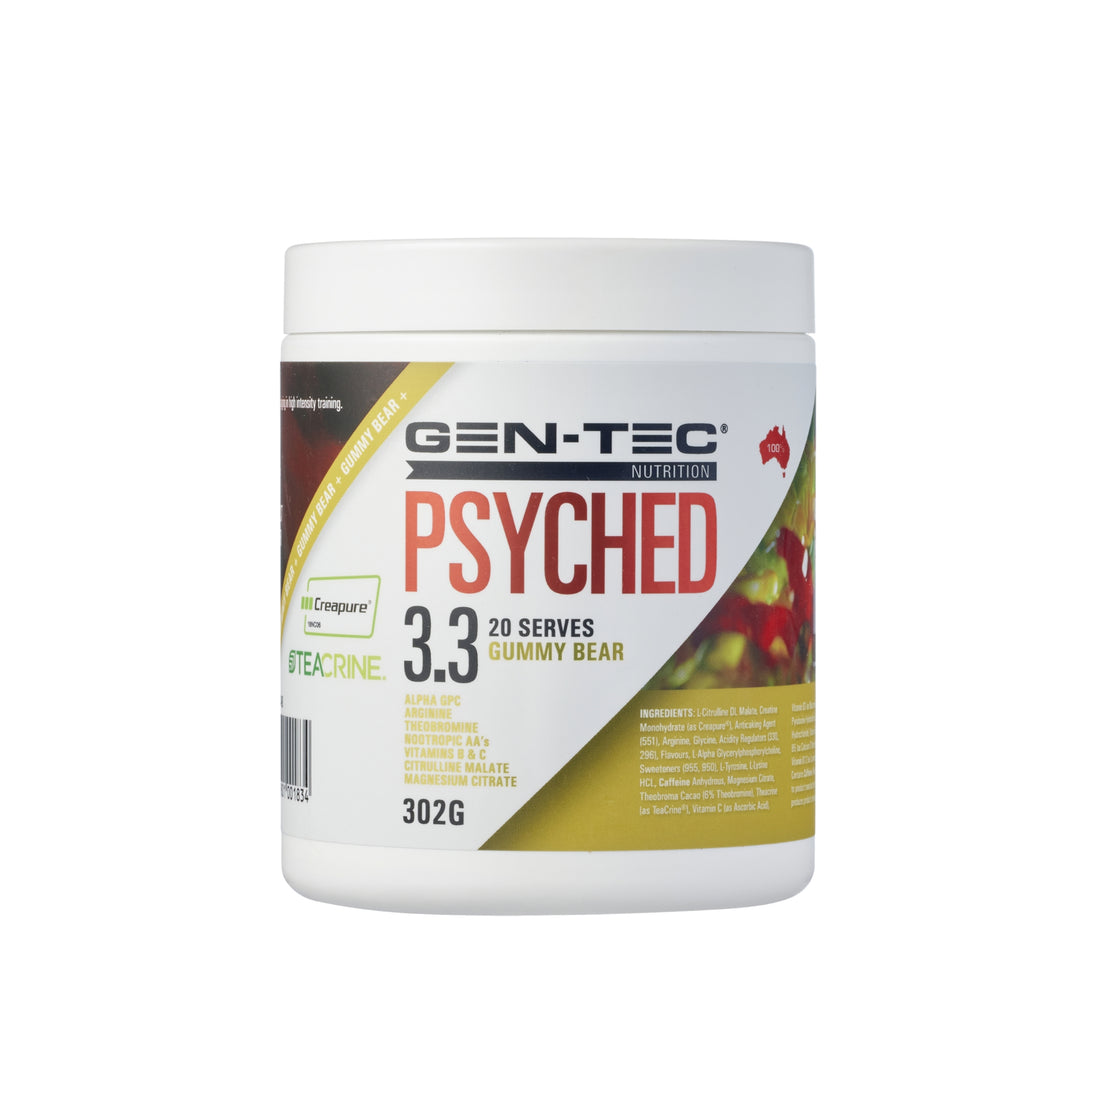 Gen-Tec Psyched 3.3